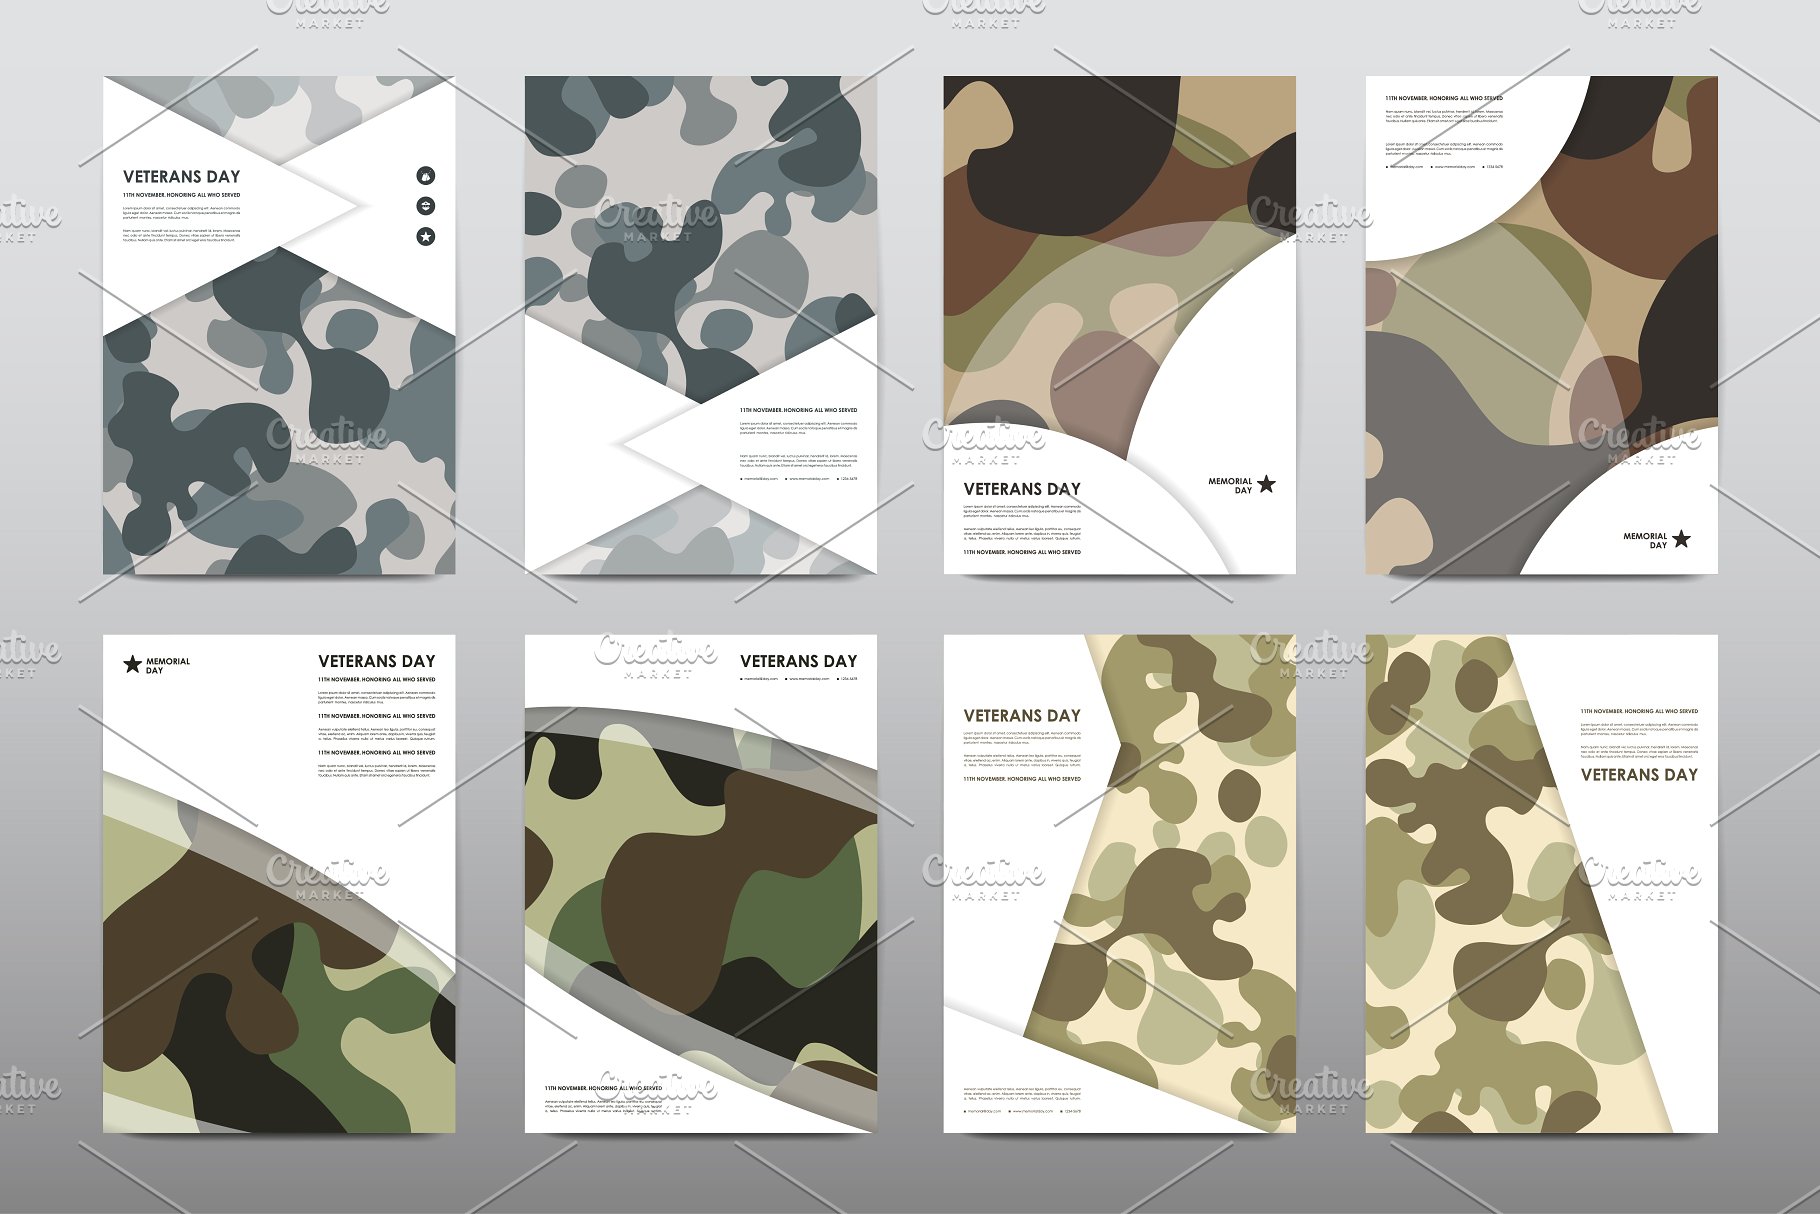 40+老兵节军人宣传小册模板 Veteran’s Day Brochures Bundle插图(32)